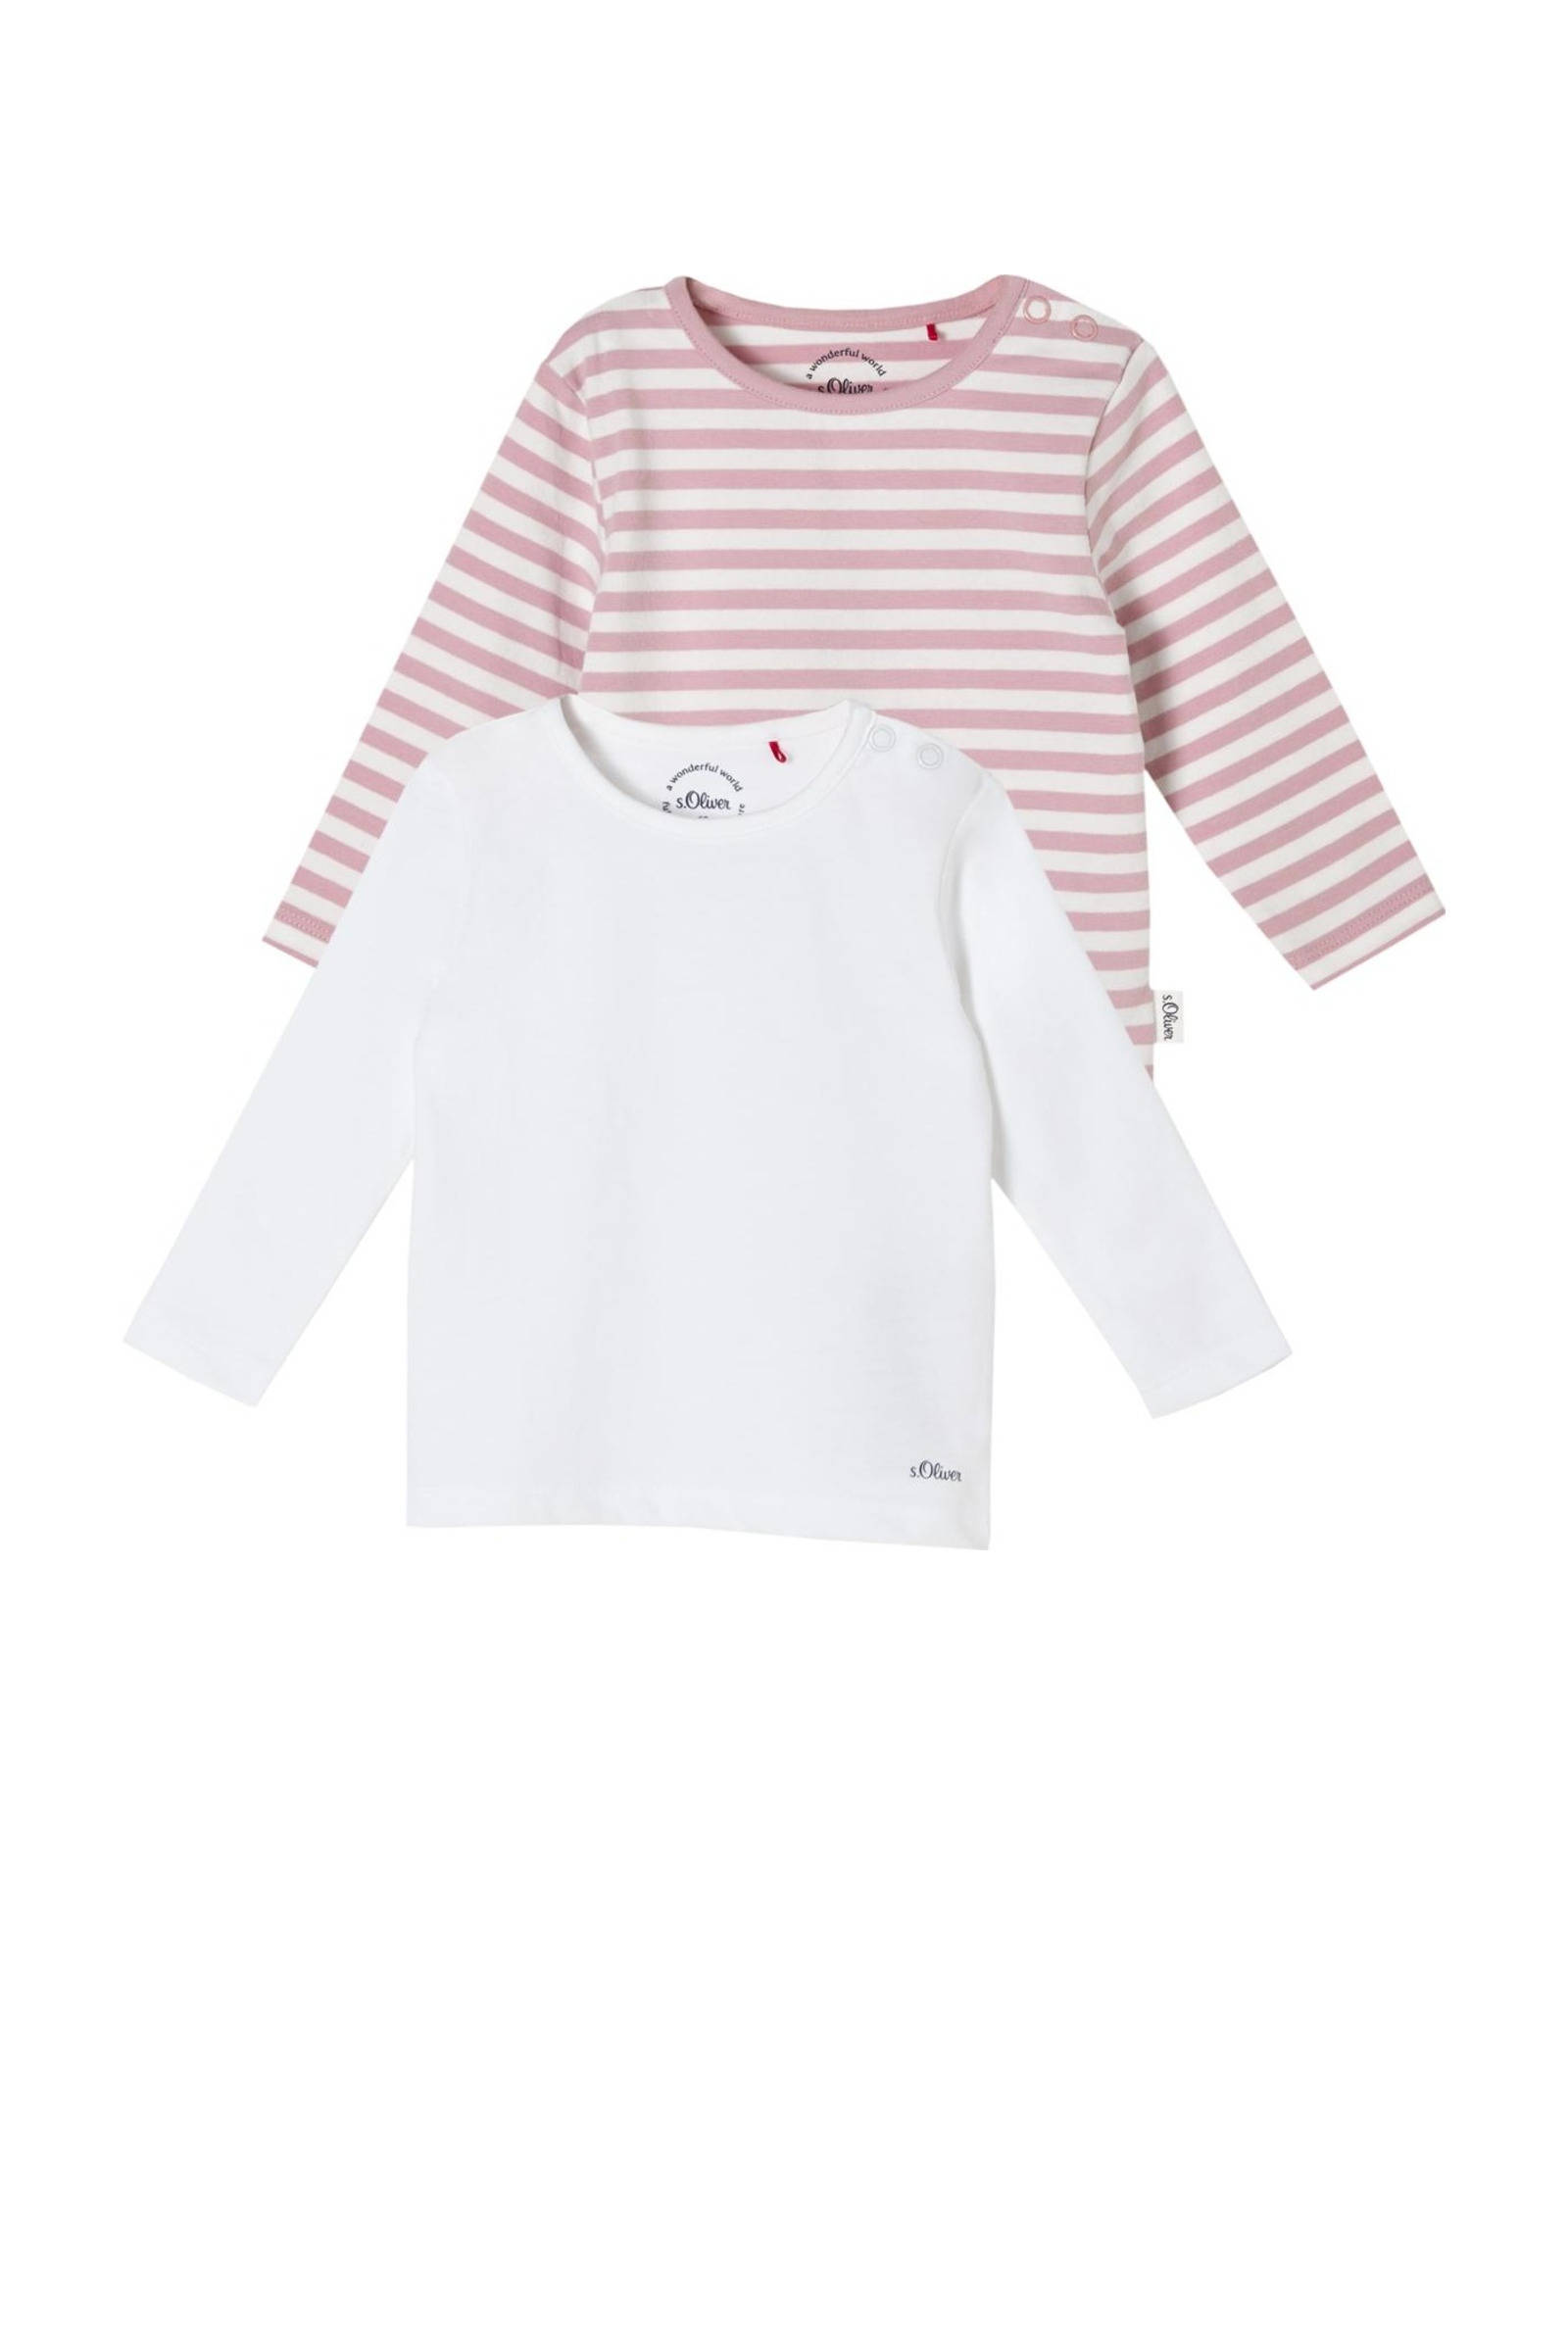 S.Oliver s. Olive r Overhemd met lange mouwen multipack rose/white online kopen